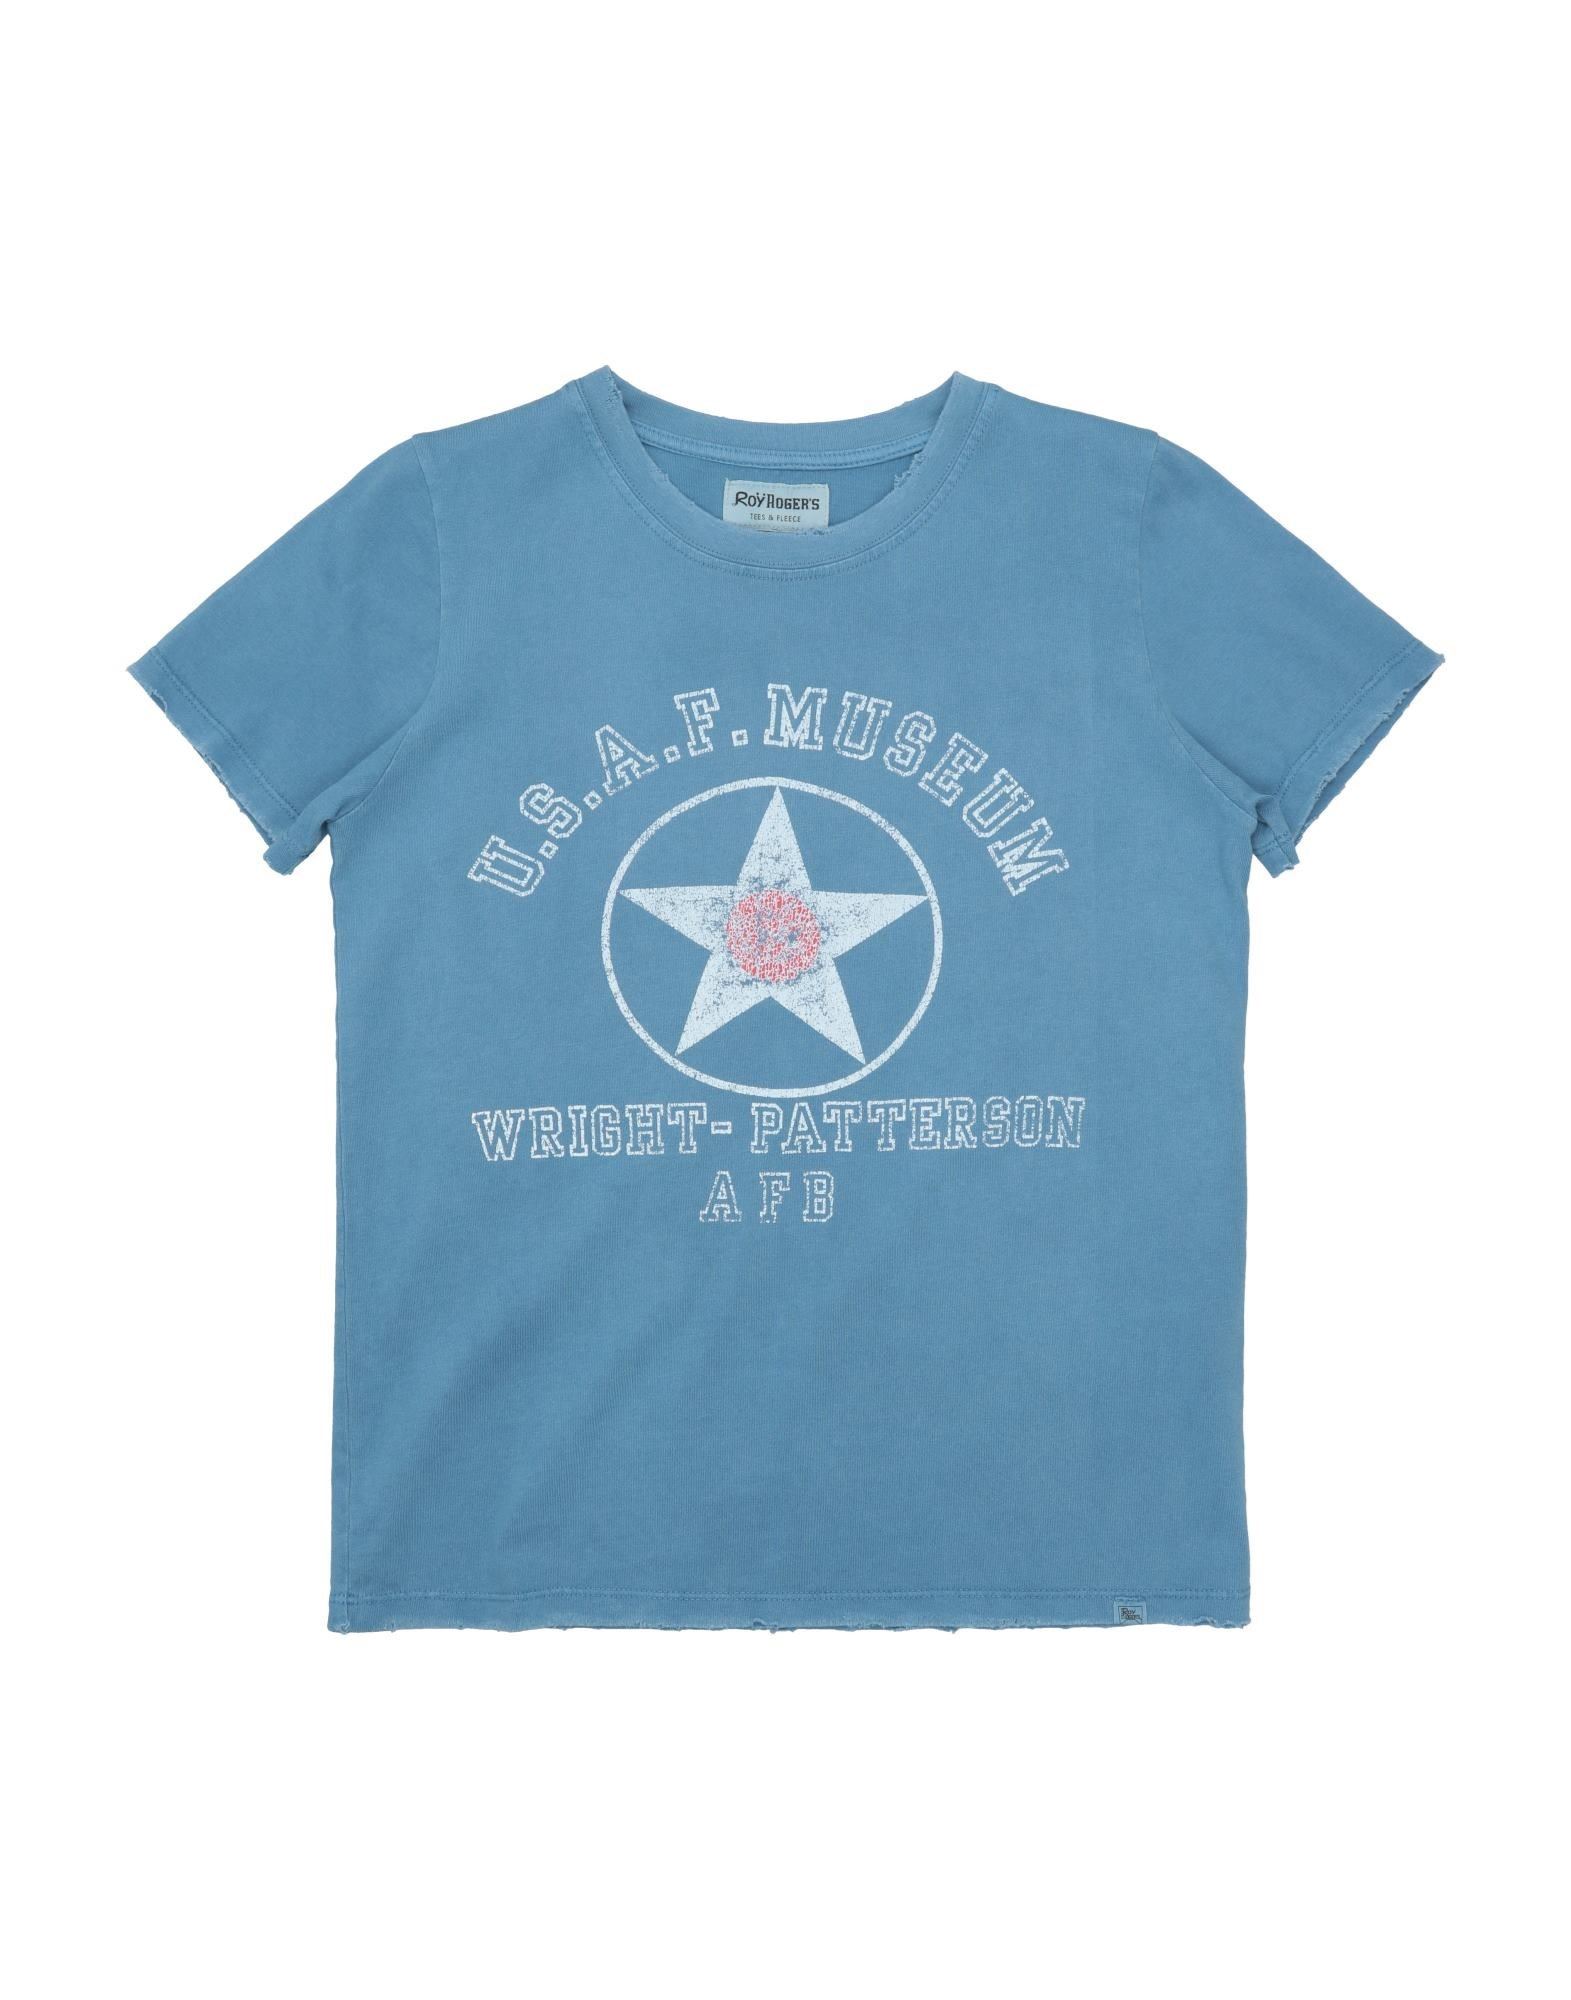 ROŸ ROGER'S T-shirts Kinder Blaugrau von ROŸ ROGER'S